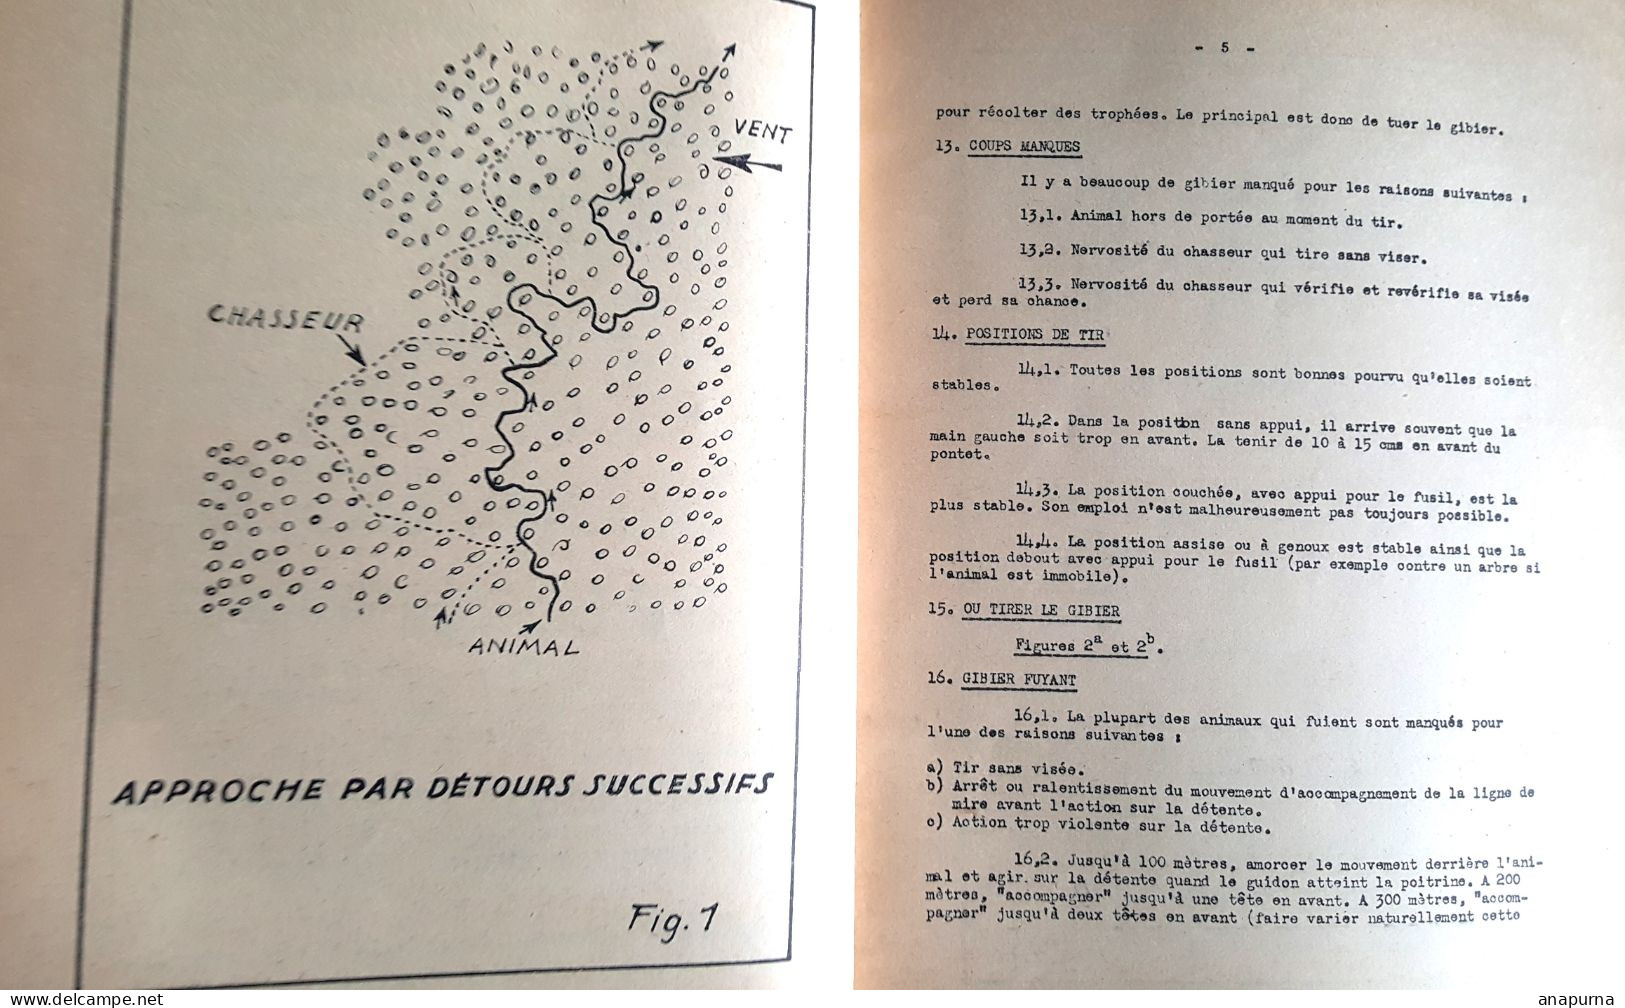 Exceptionnel, Paul Emile Victor, EPF, 79 pages 1949, Techniques de survie, dessins de PEV,